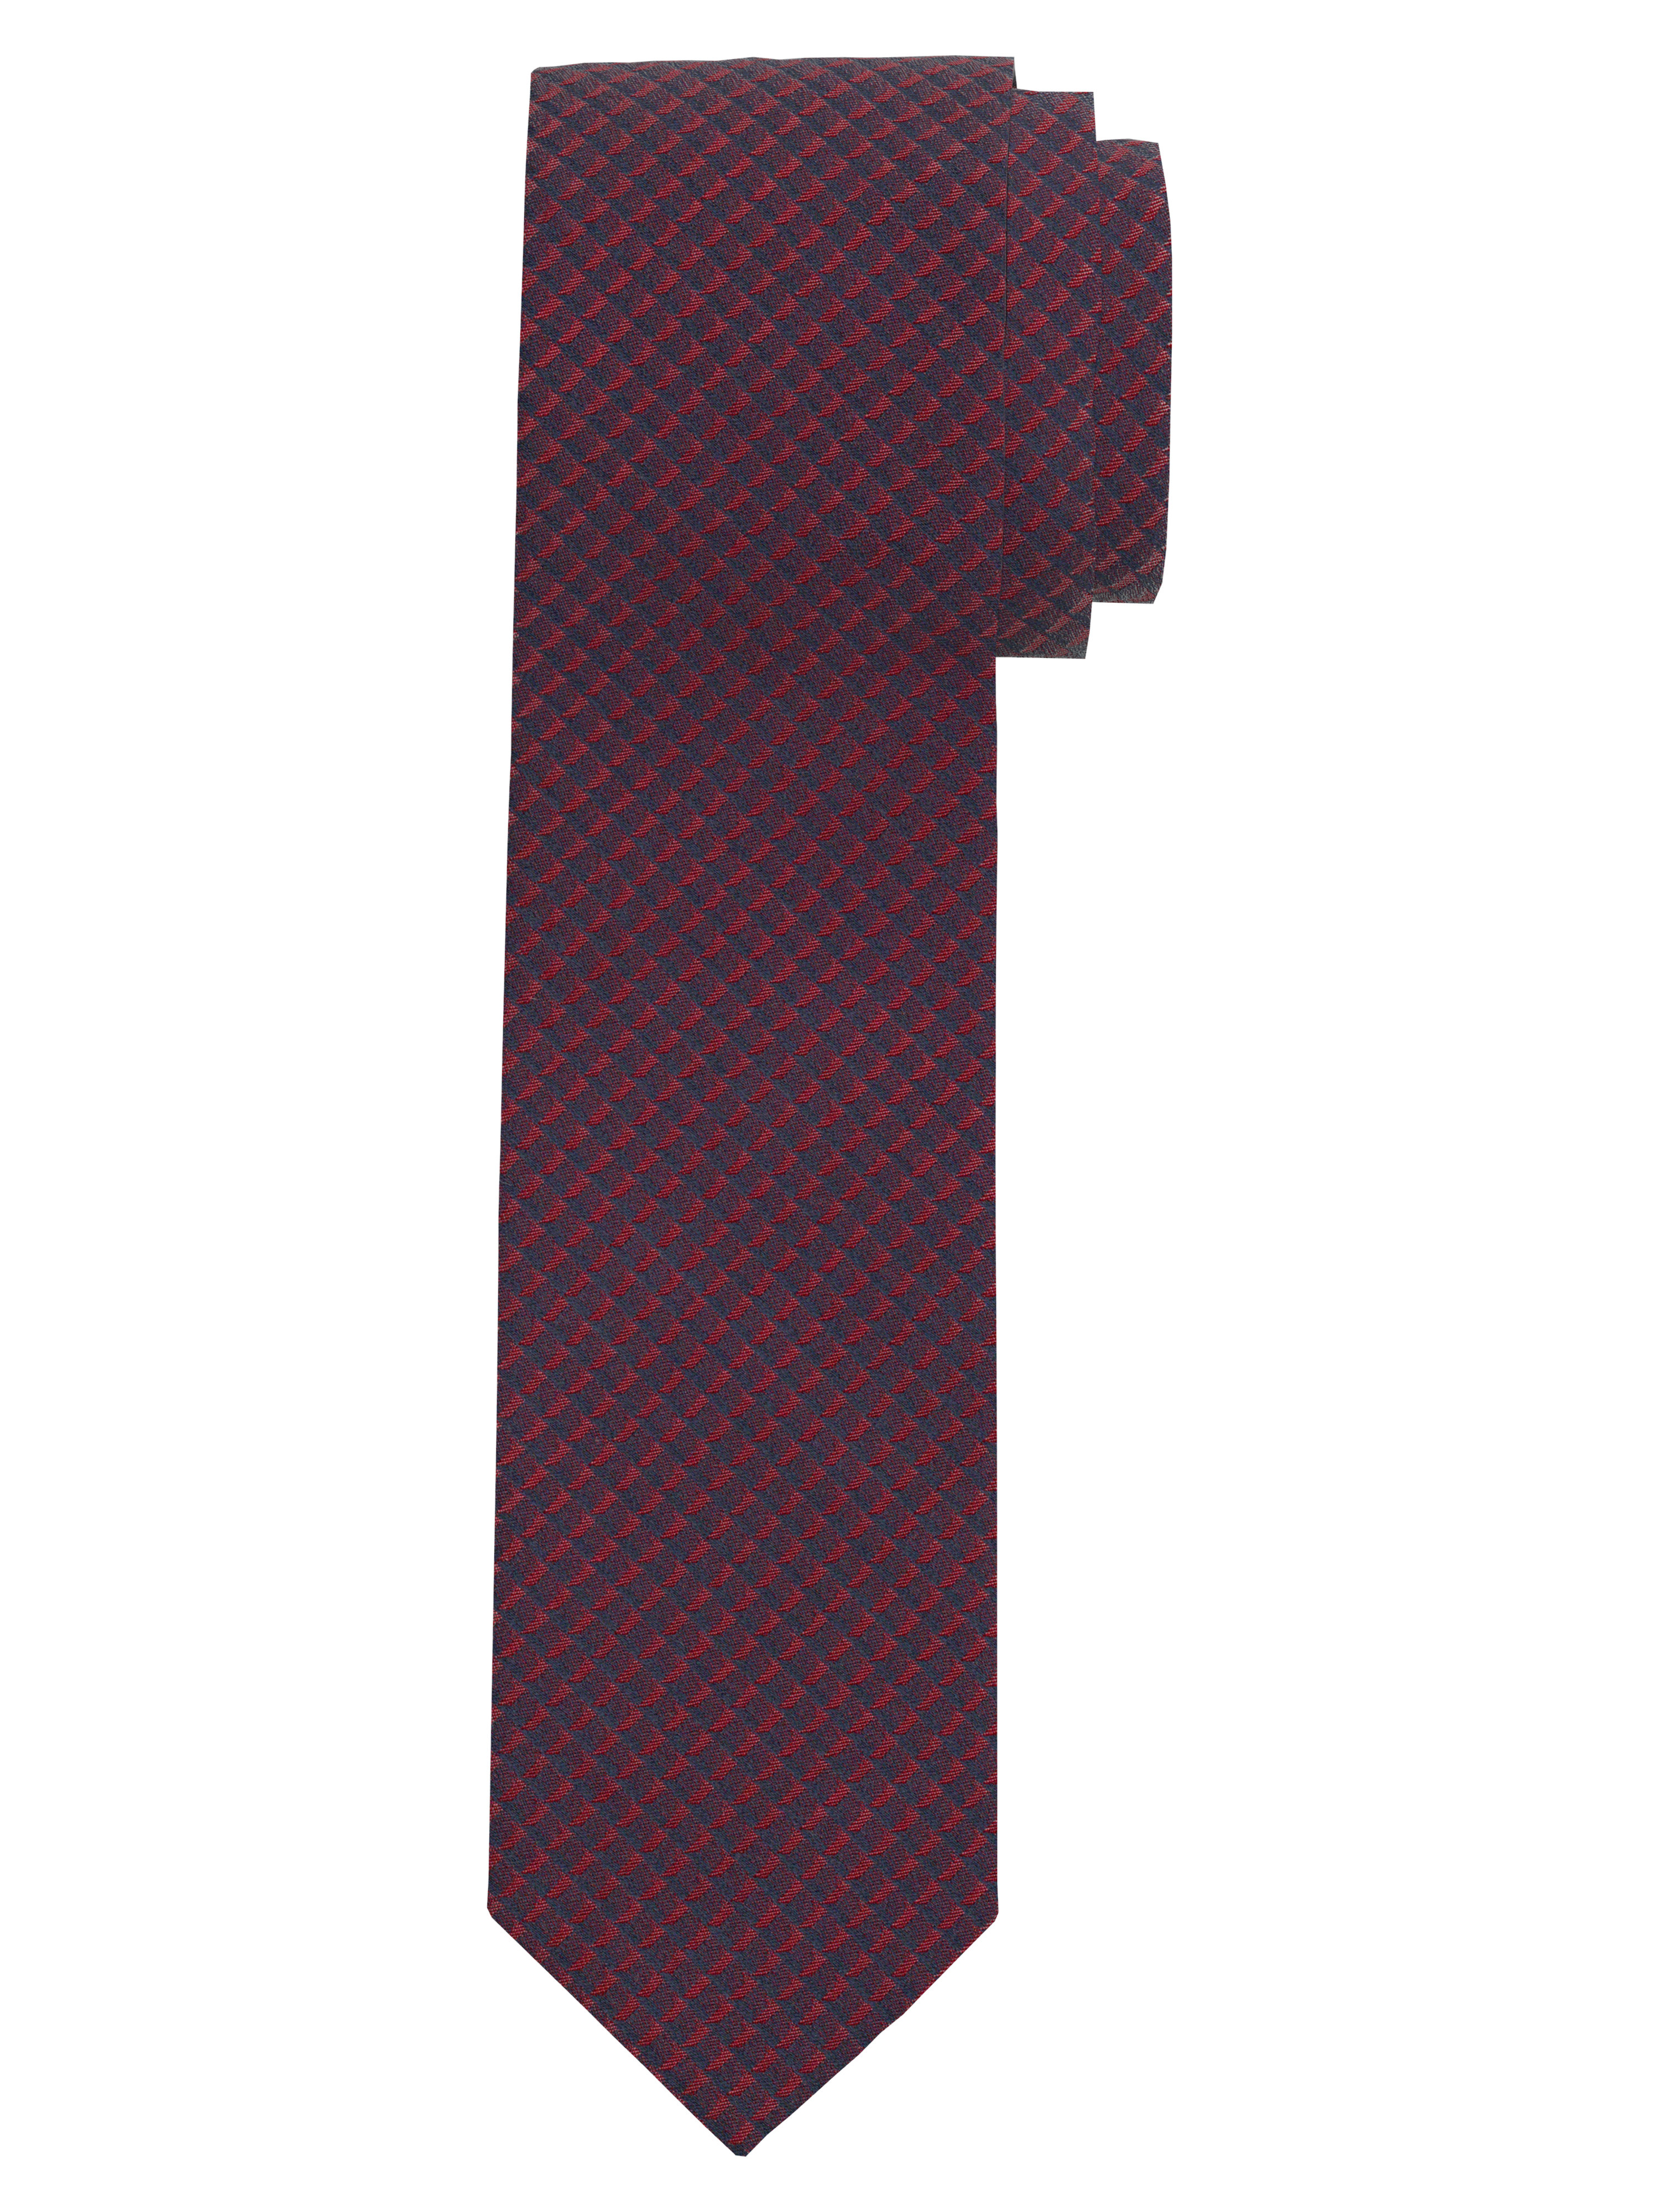 OLYMP Krawatte, slim 6,5 cm | Rot - 1791003501